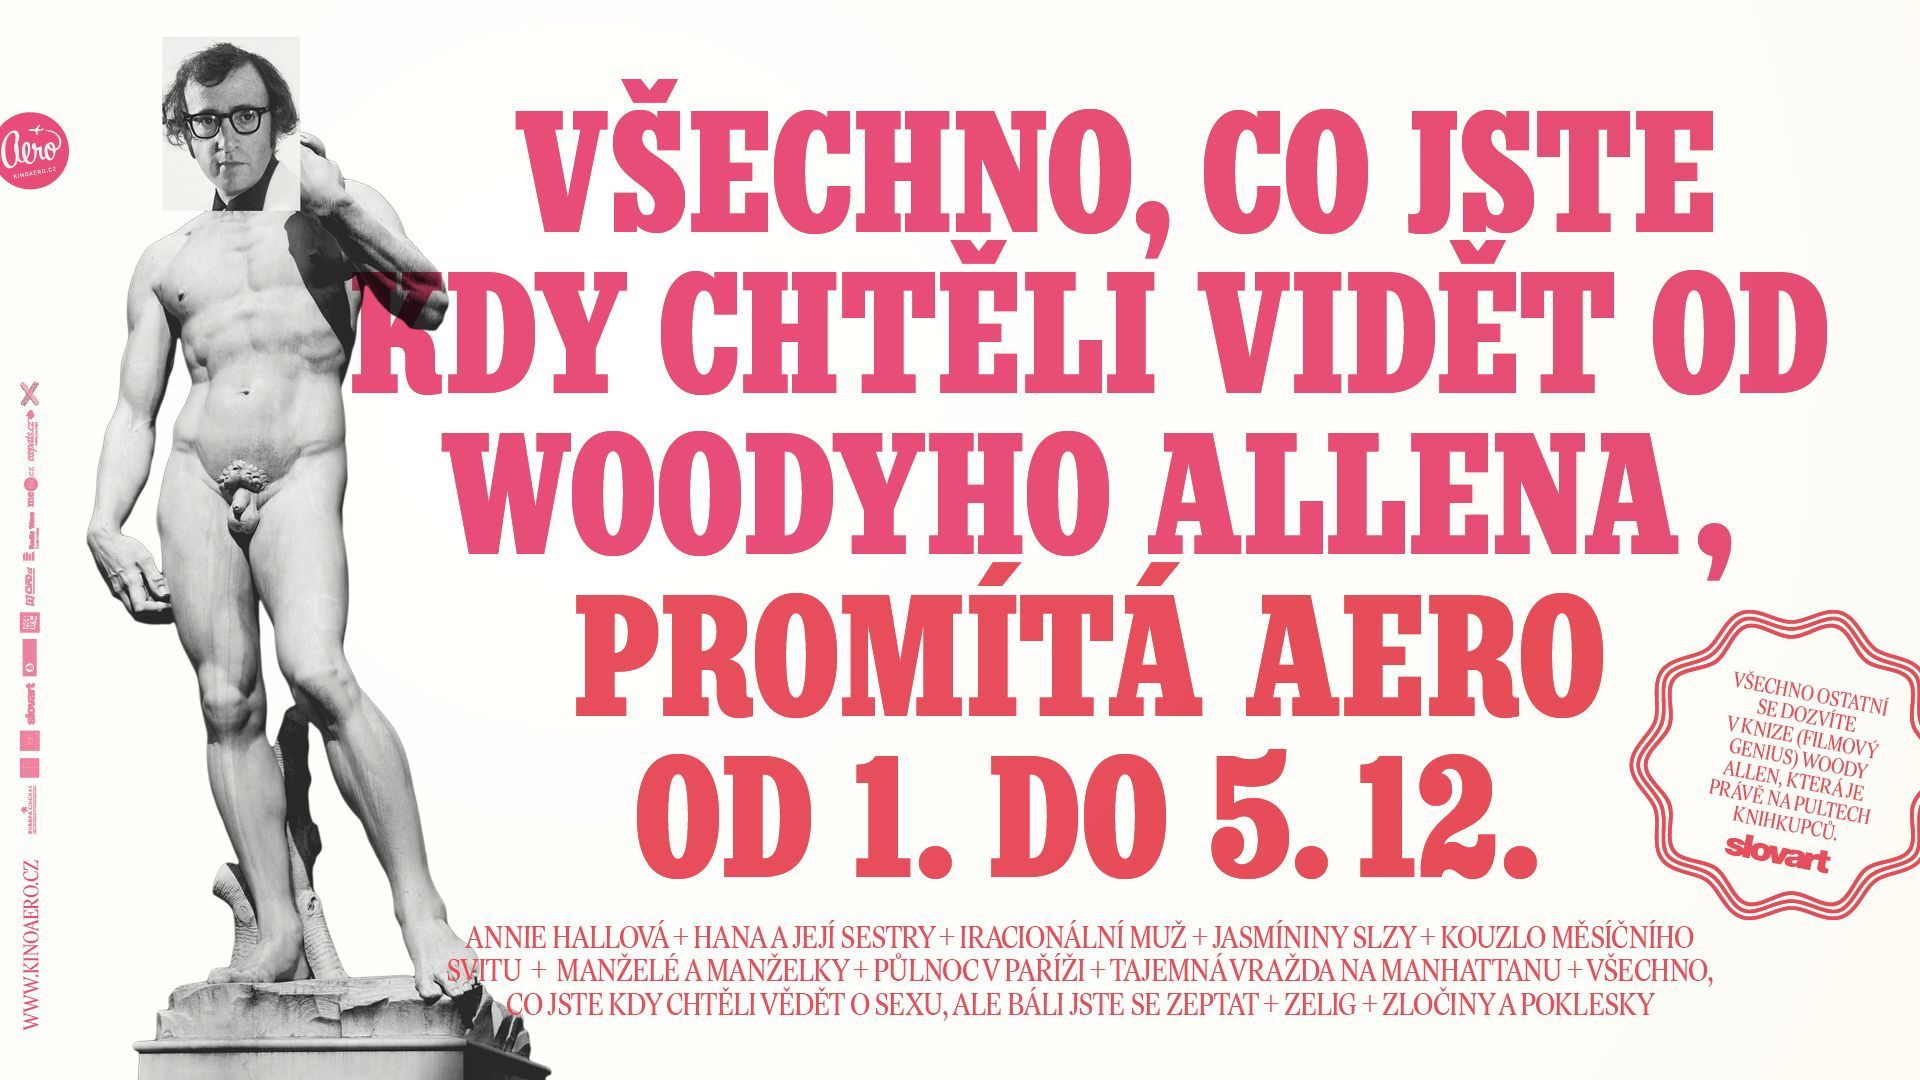 Woody Allen Aero